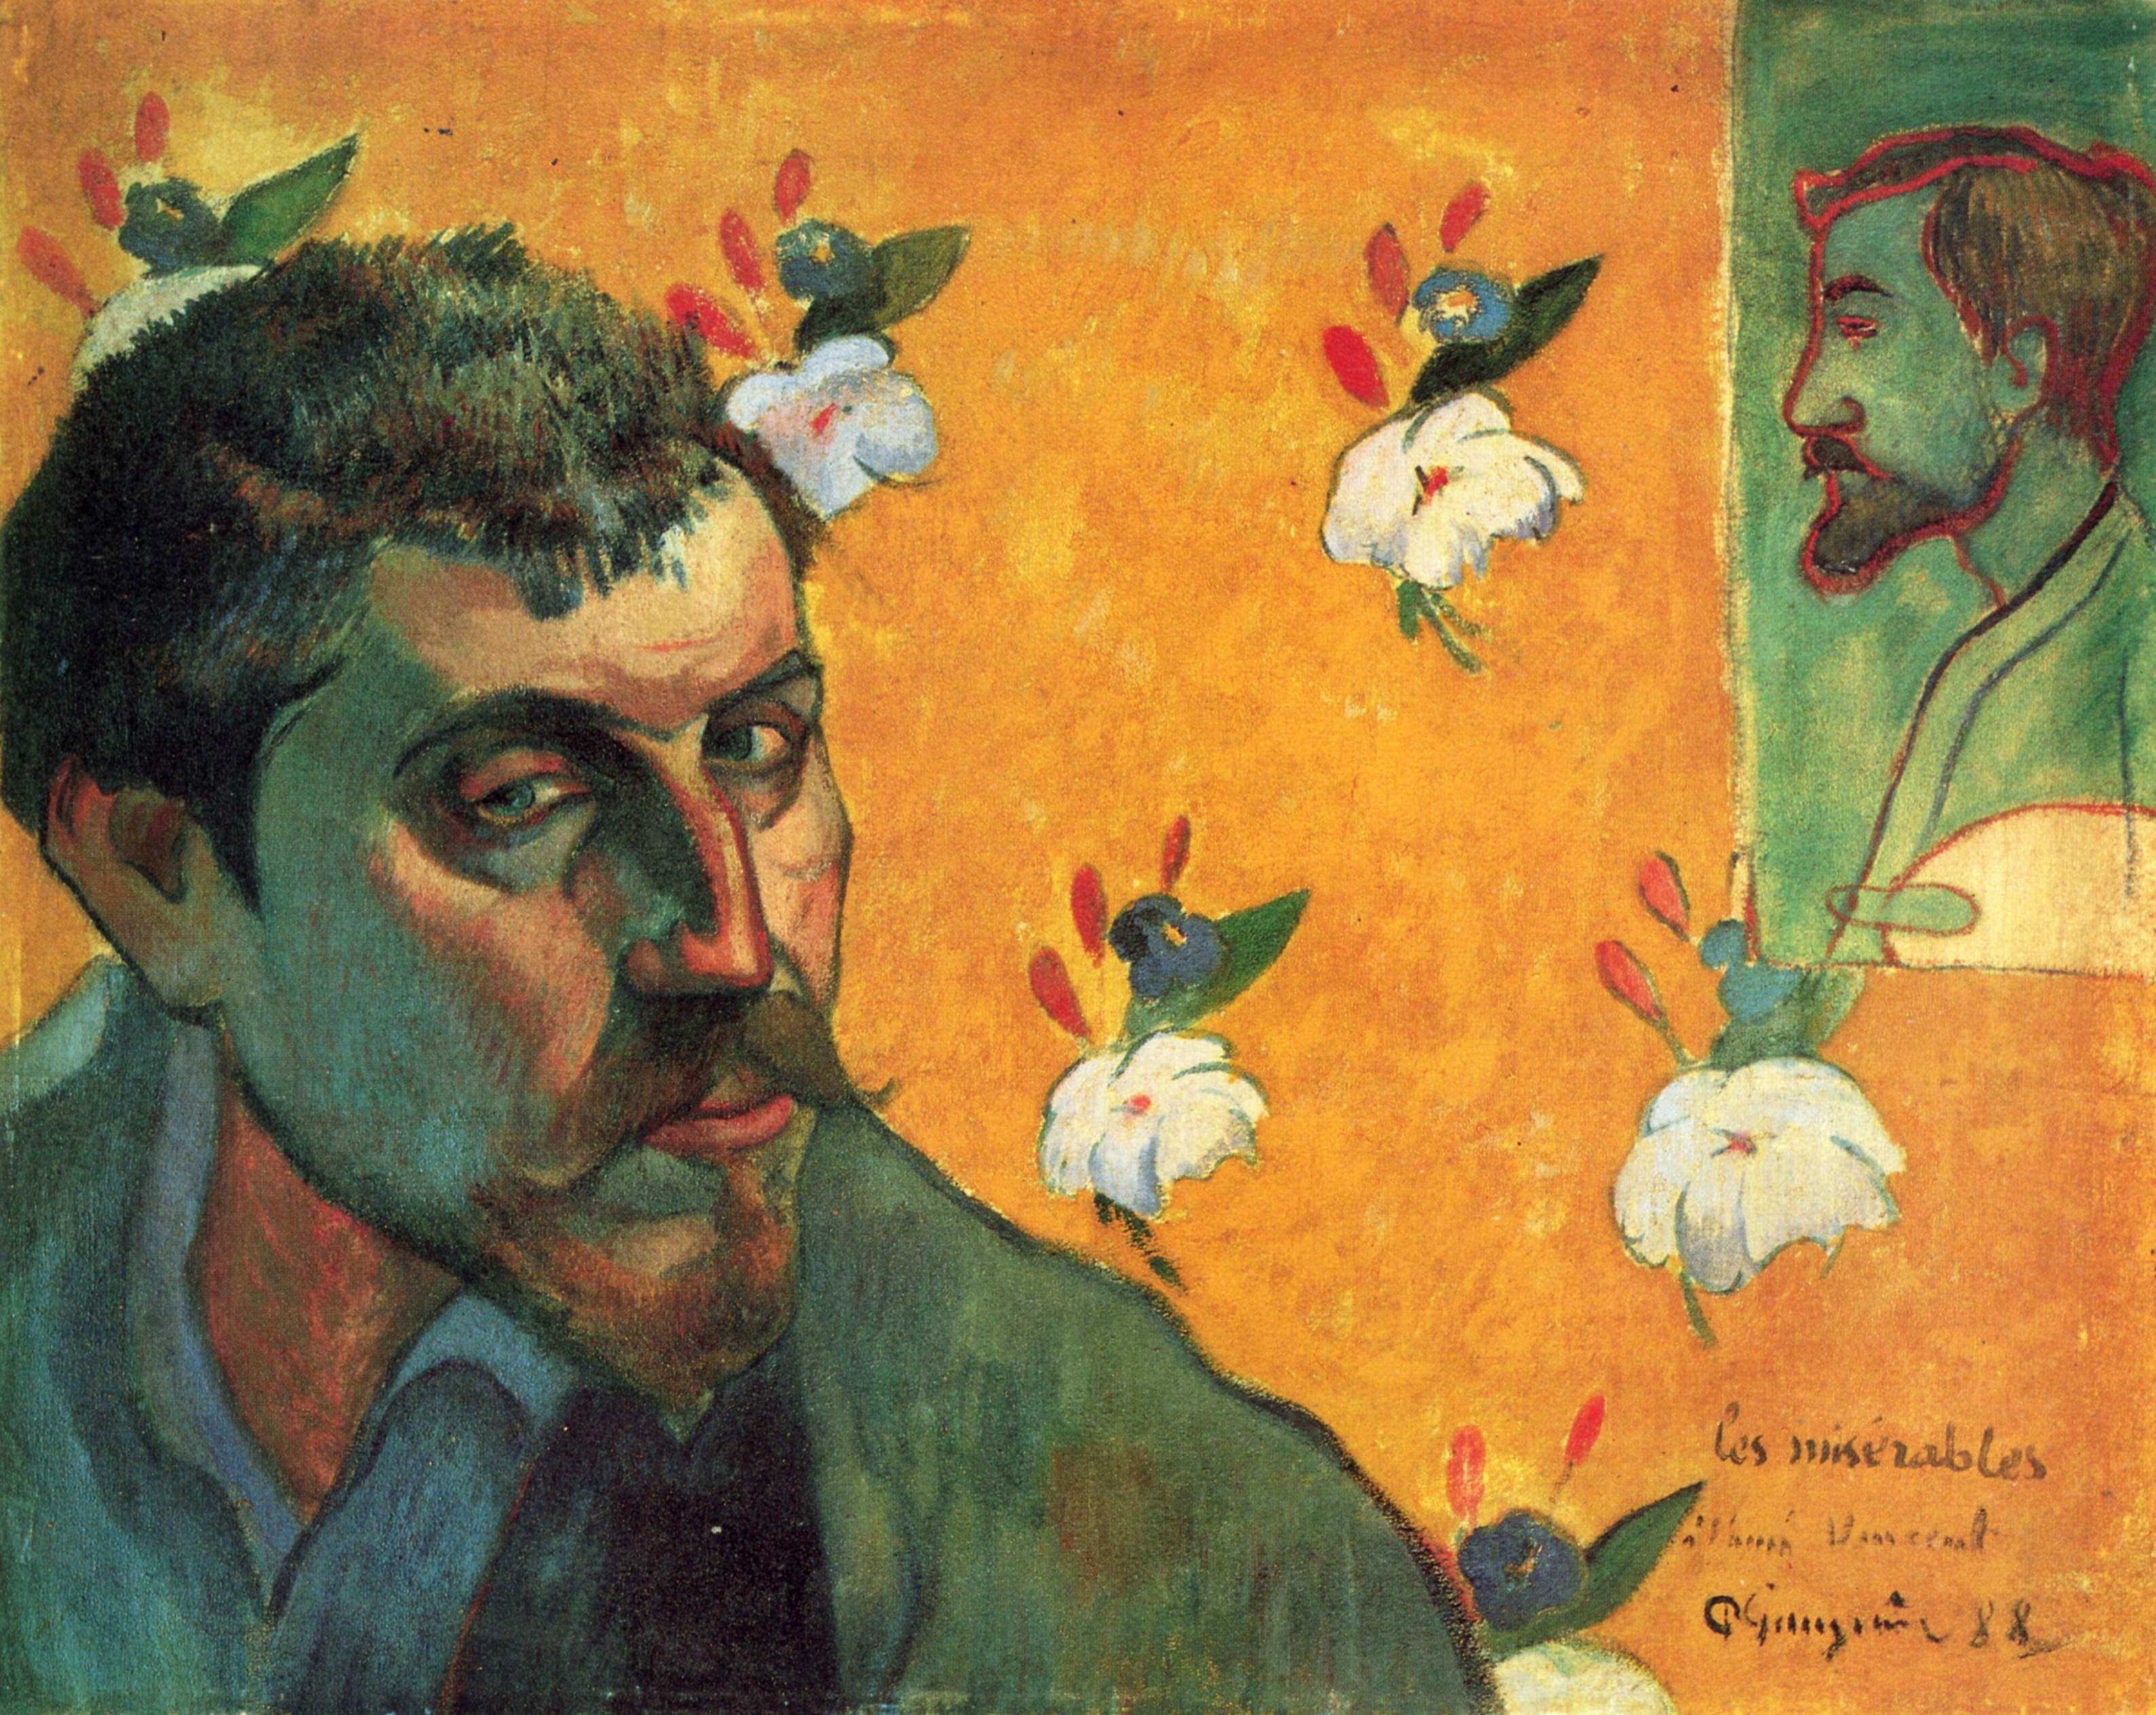 Autoritratto con Émile Bernard by Paul Gauguin - 1888 - 45 × 55 cm  Van Gogh Museum